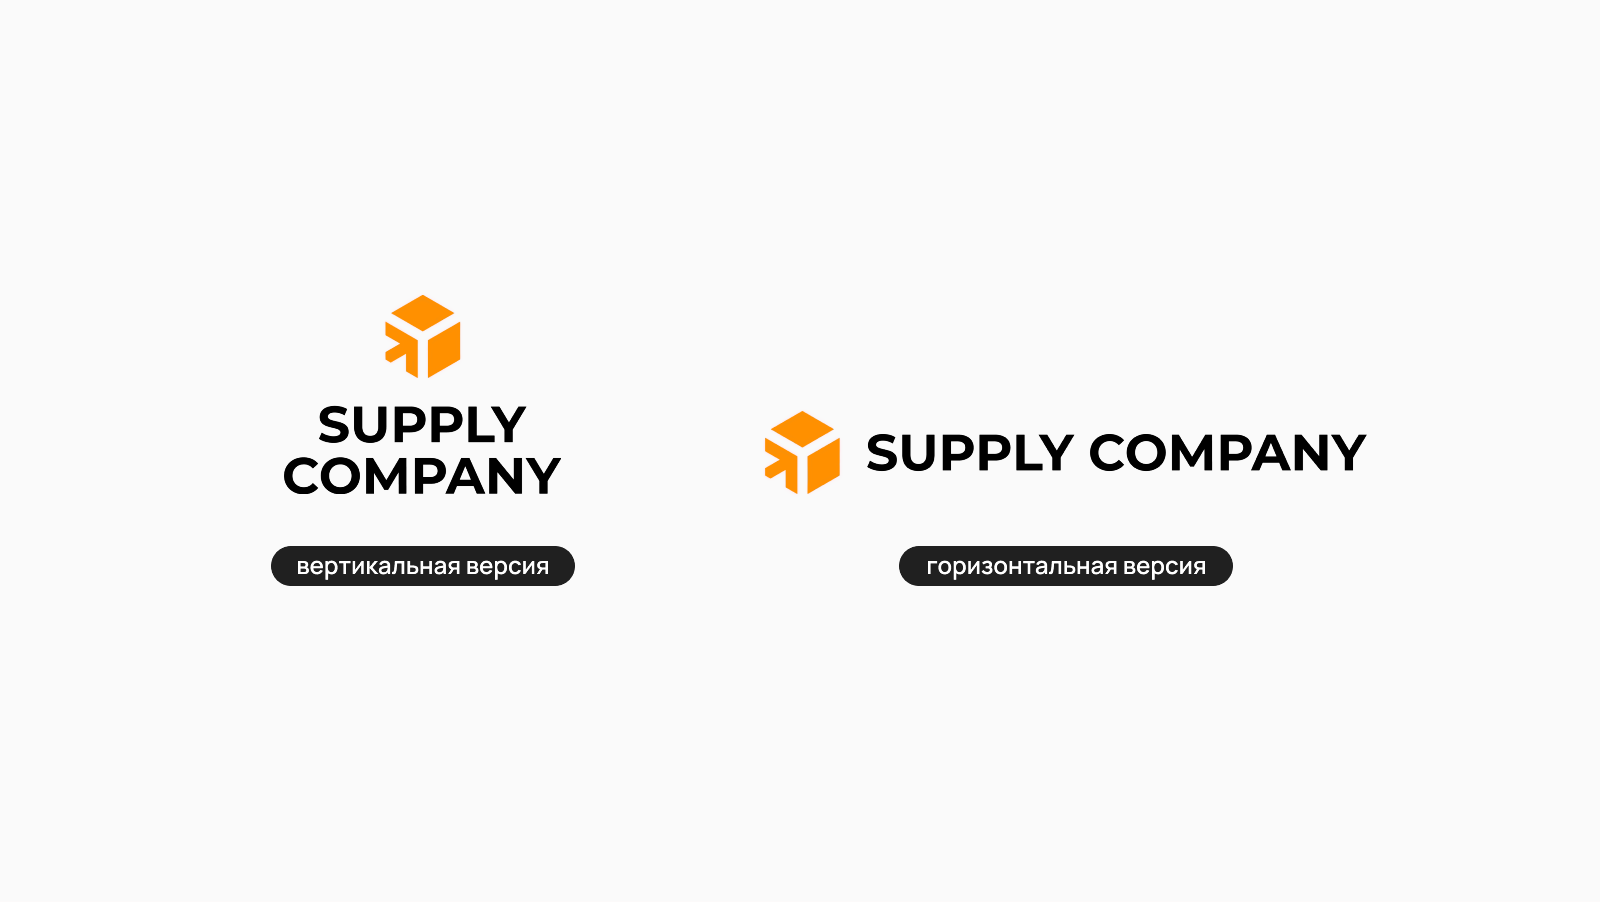 Supplier company. Горизонтальная версия логотипа. Упрощенный вариант логотипа. Вариации логотипа. Вертикальная версия логотипа.